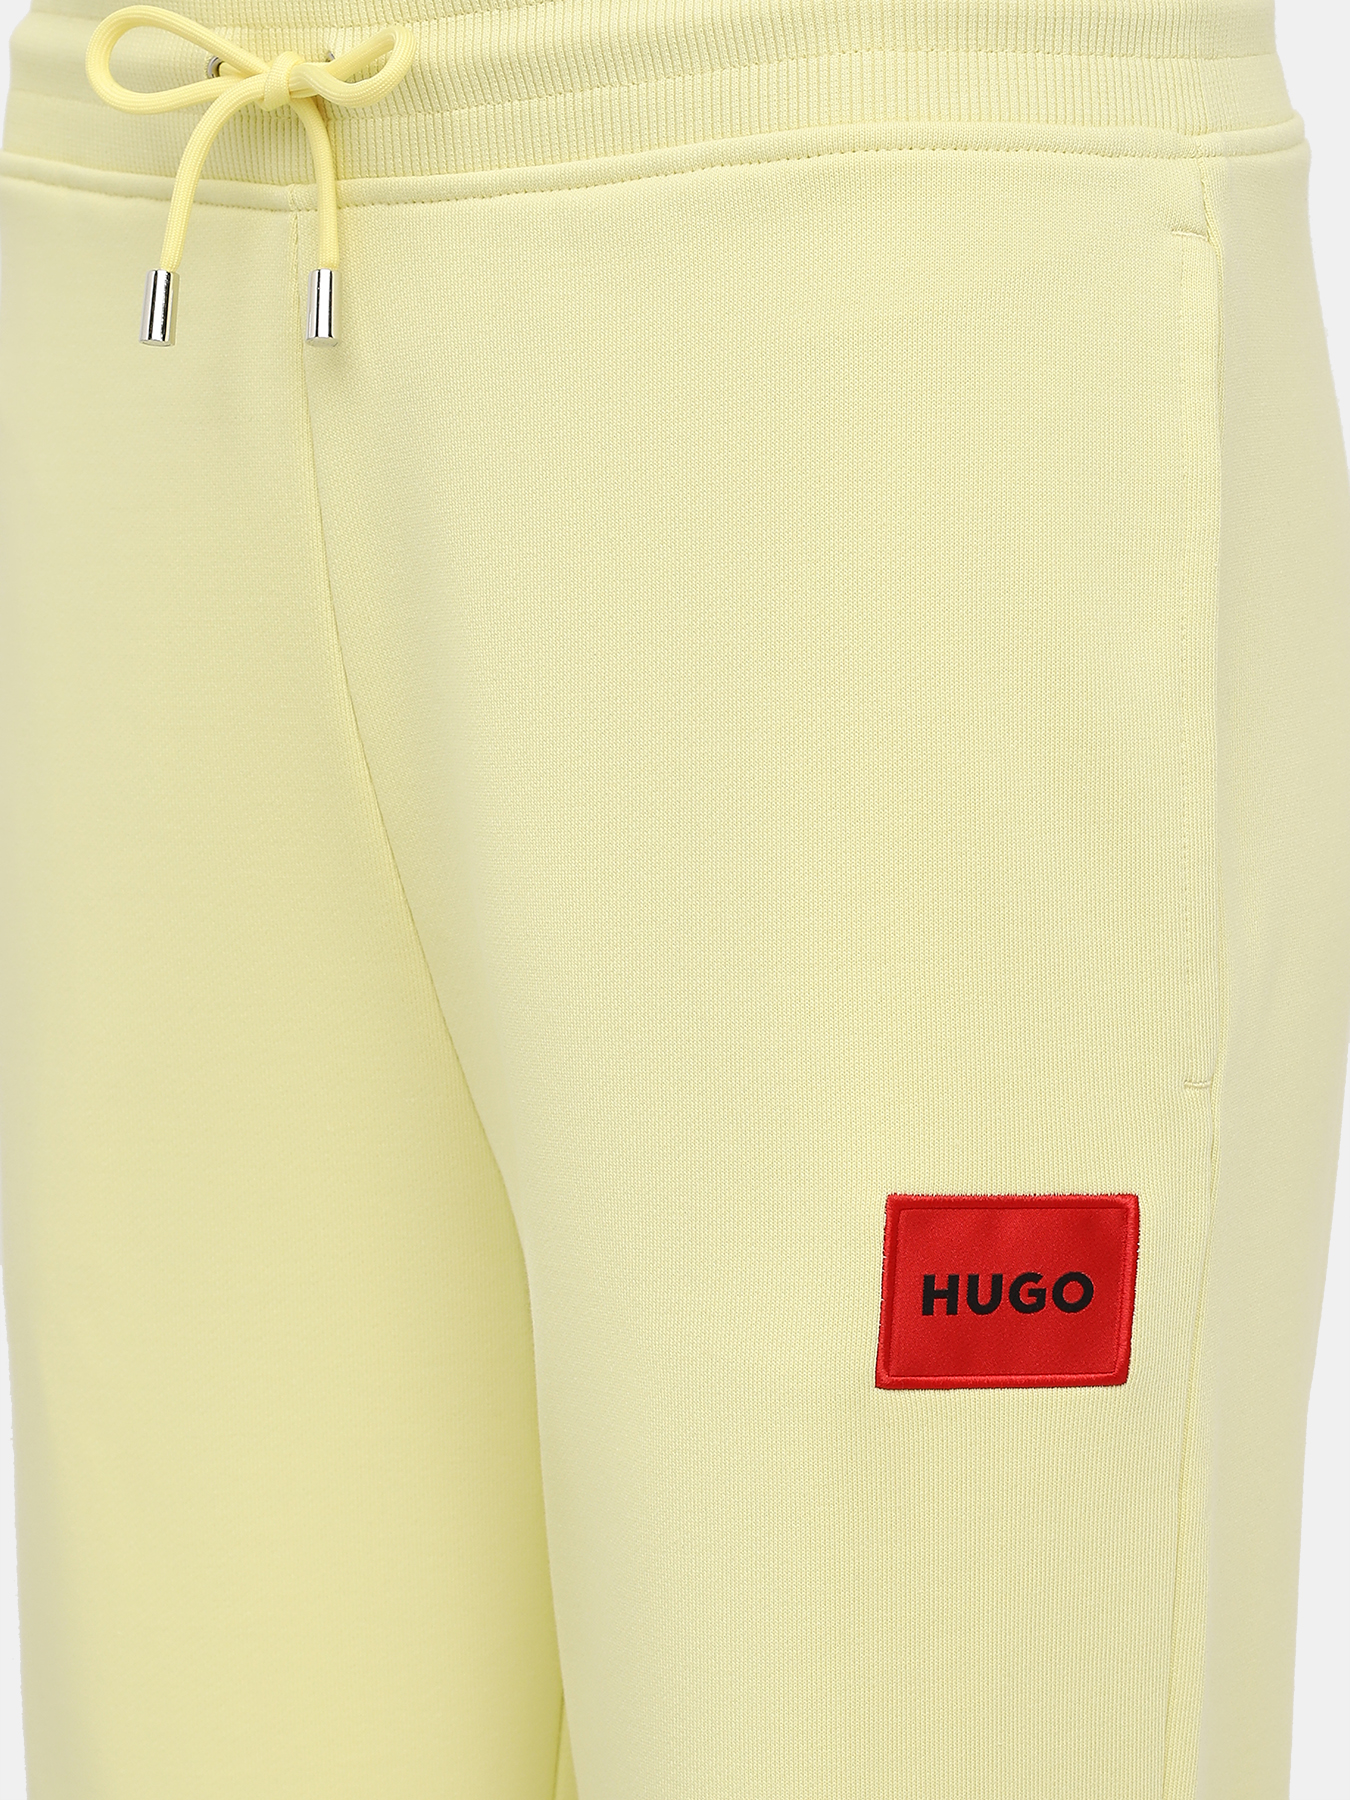 Спортивные брюки Dachibi redlabel HUGO 420595-043, цвет желтый, размер 44-46 - фото 2